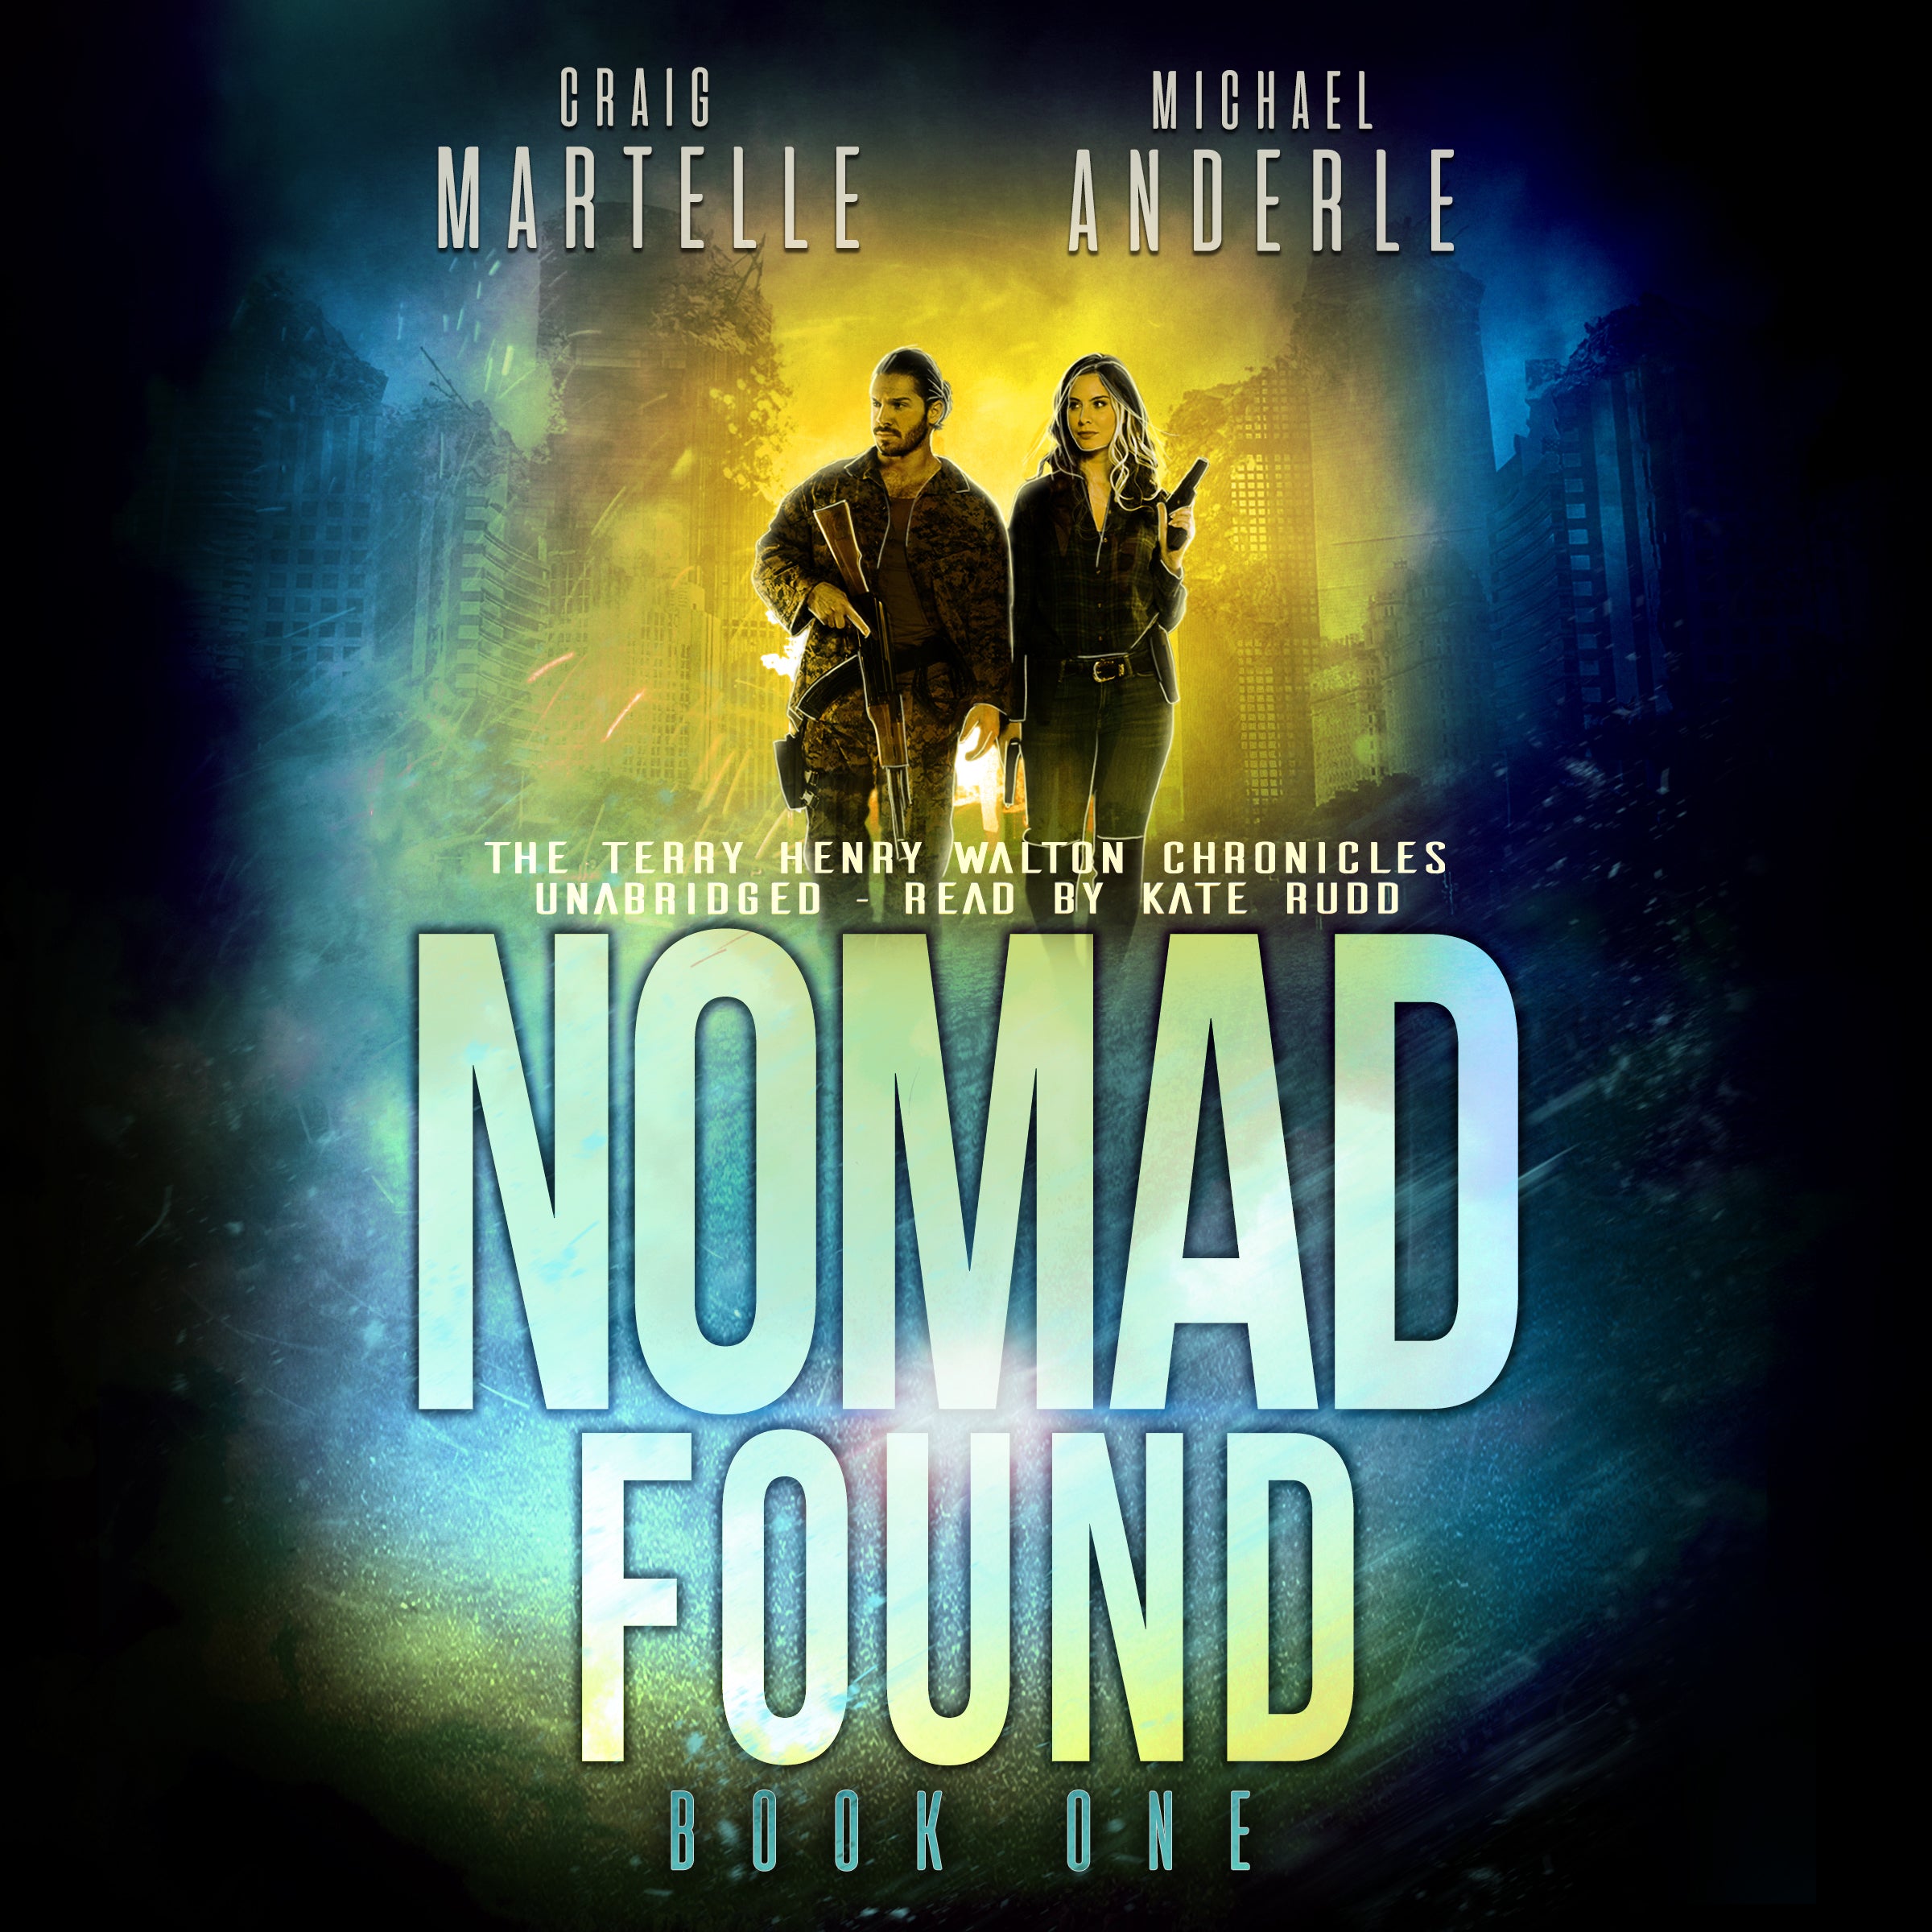 Nomad Found